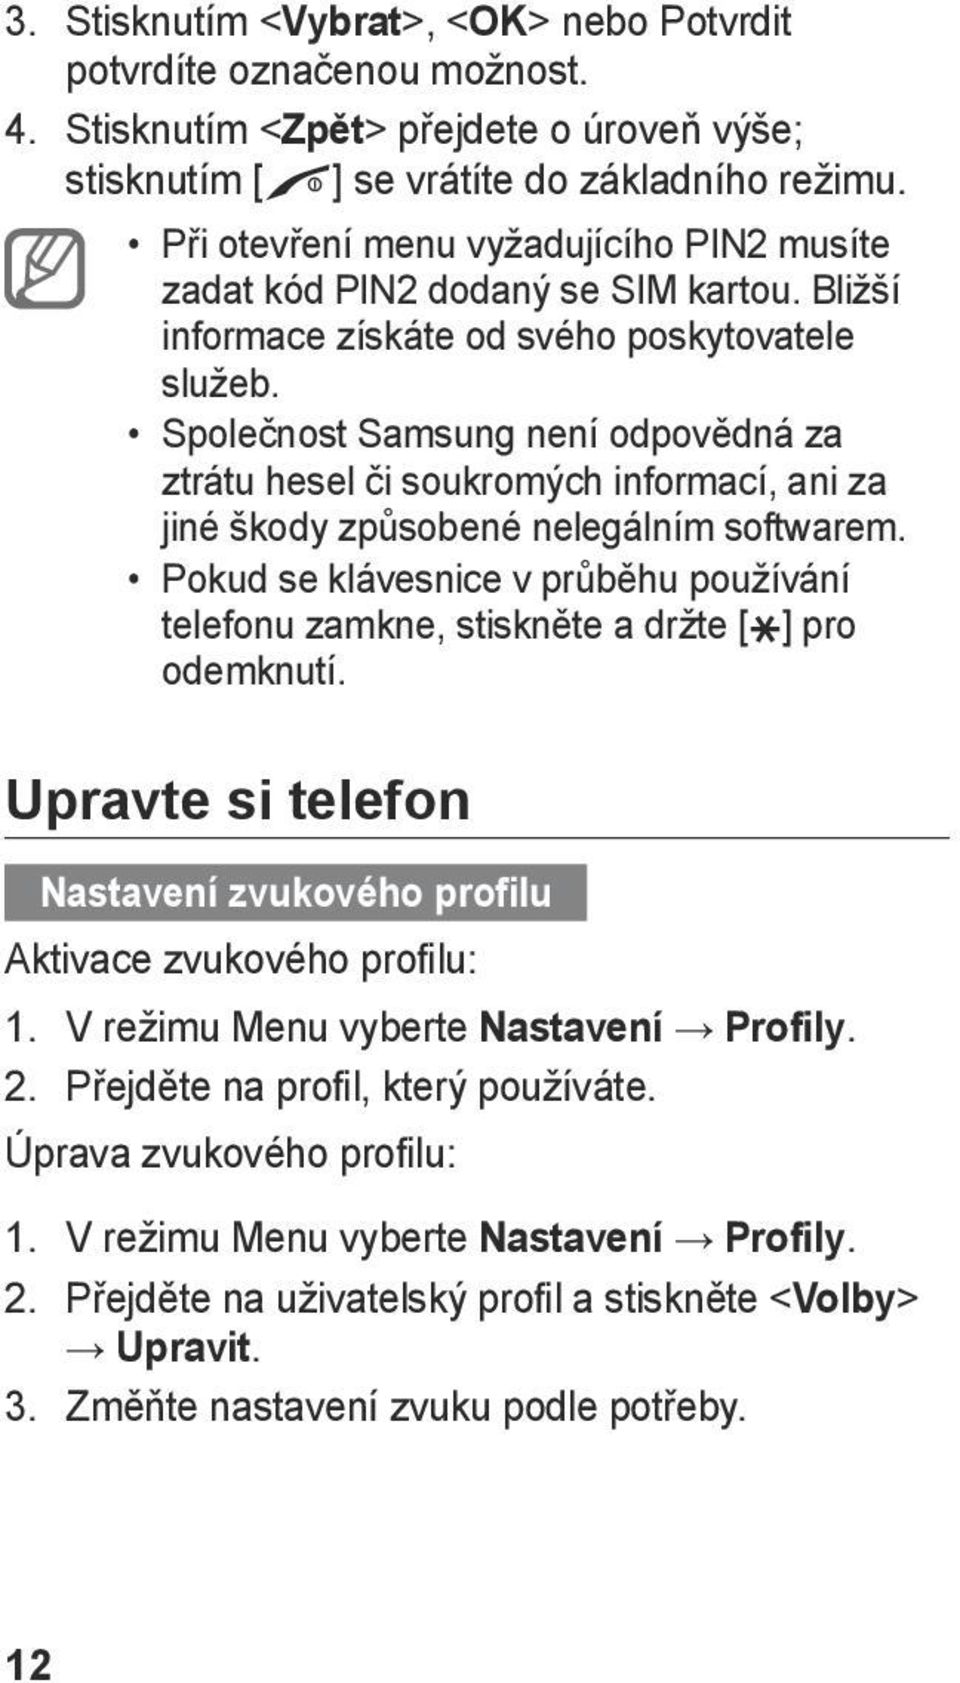 Společnost Samsung není odpovědná za ztrátu hesel či soukromých informací, ani za jiné škody způsobené nelegálním softwarem.